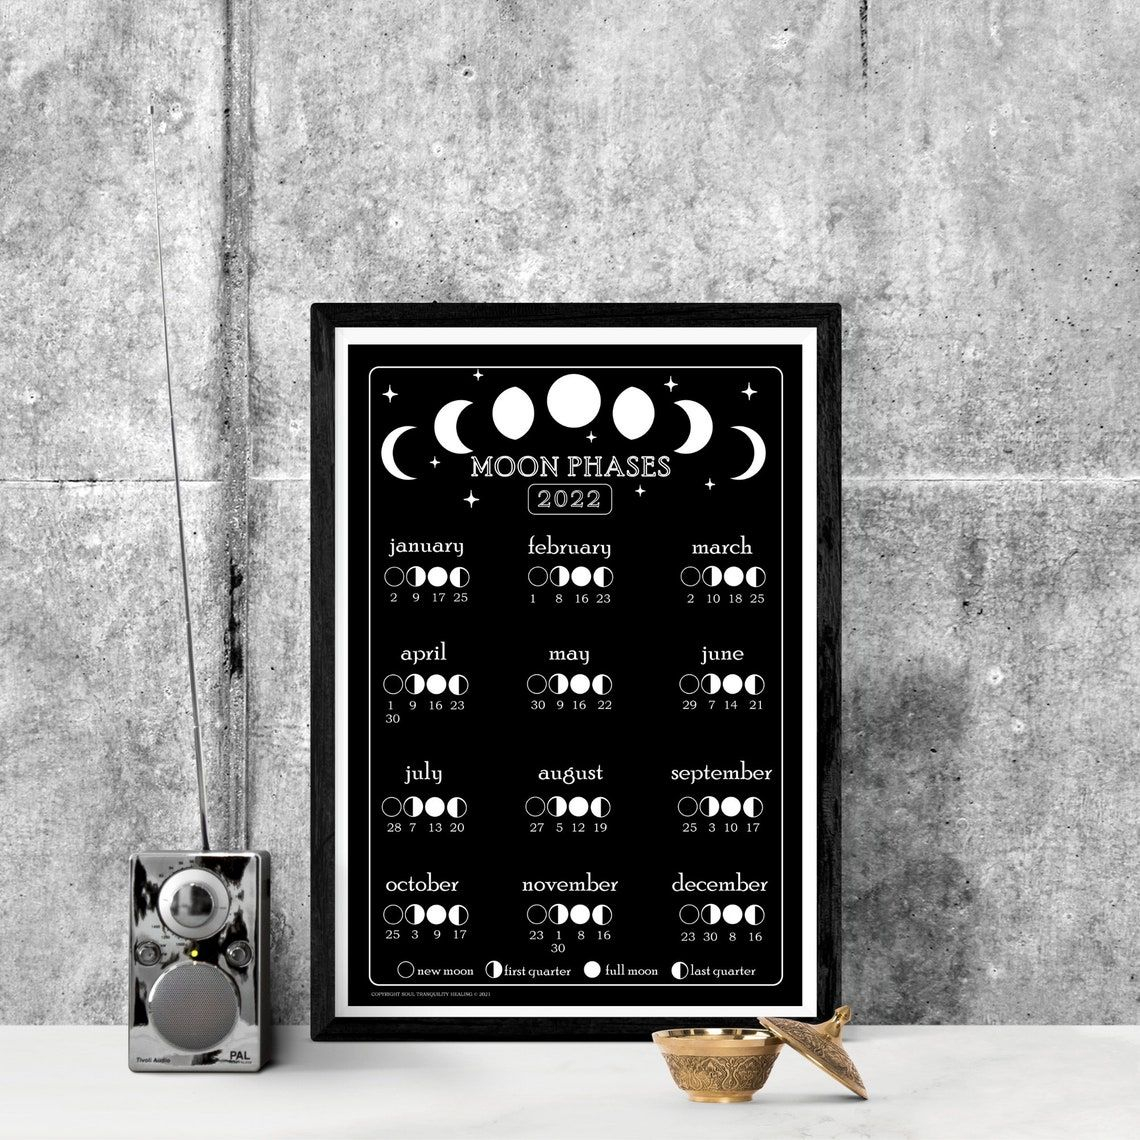 Lunar Calendar 365 Days And Moon Phases Calendar 2022 Moon